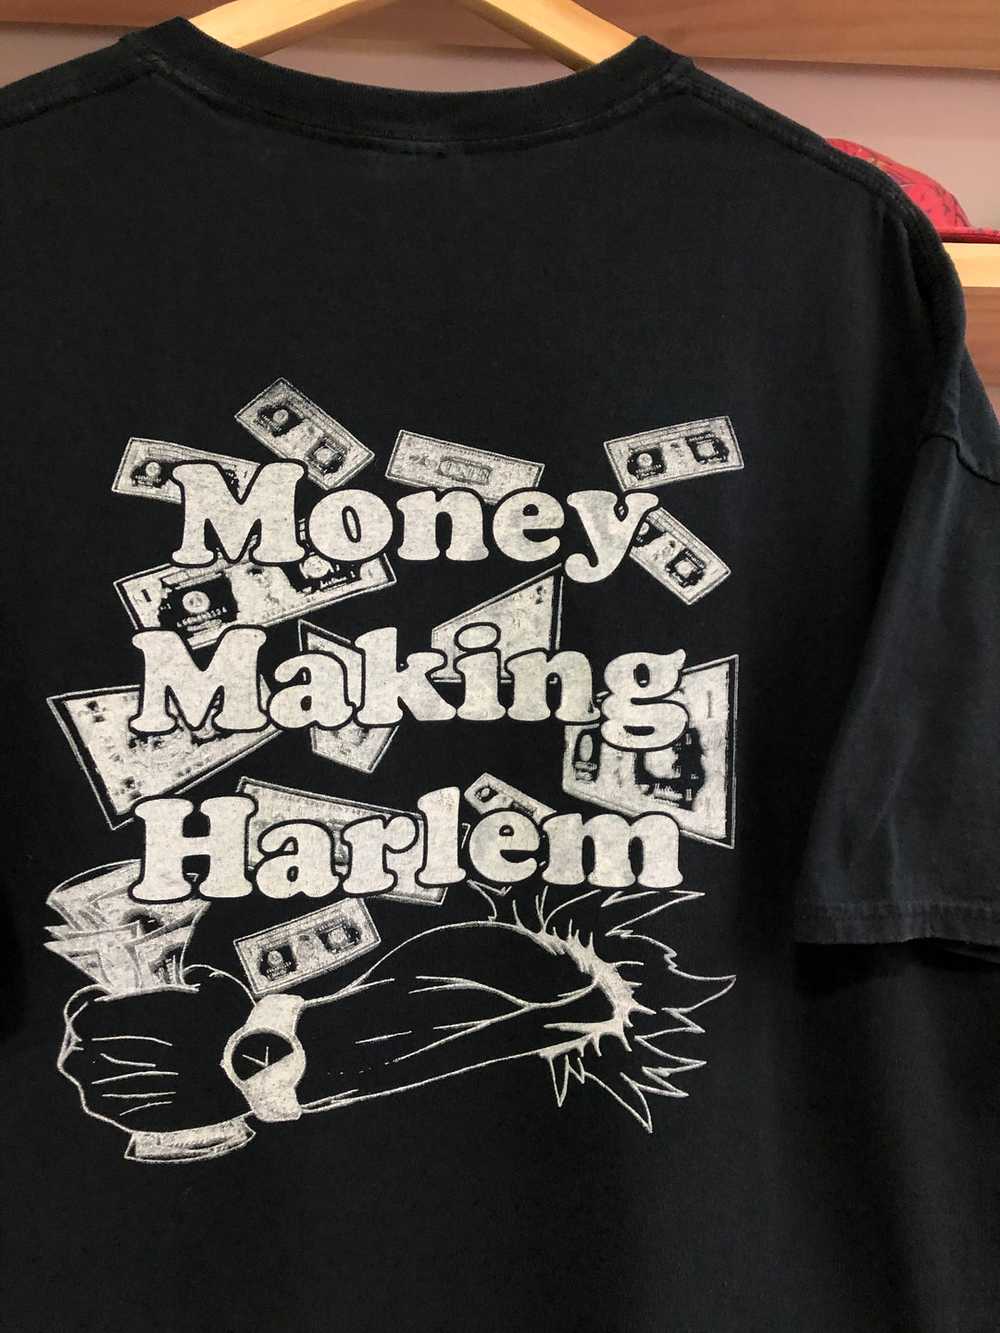 2012 Harlem Week “Money Making Harlem” Tee Size XL - image 5